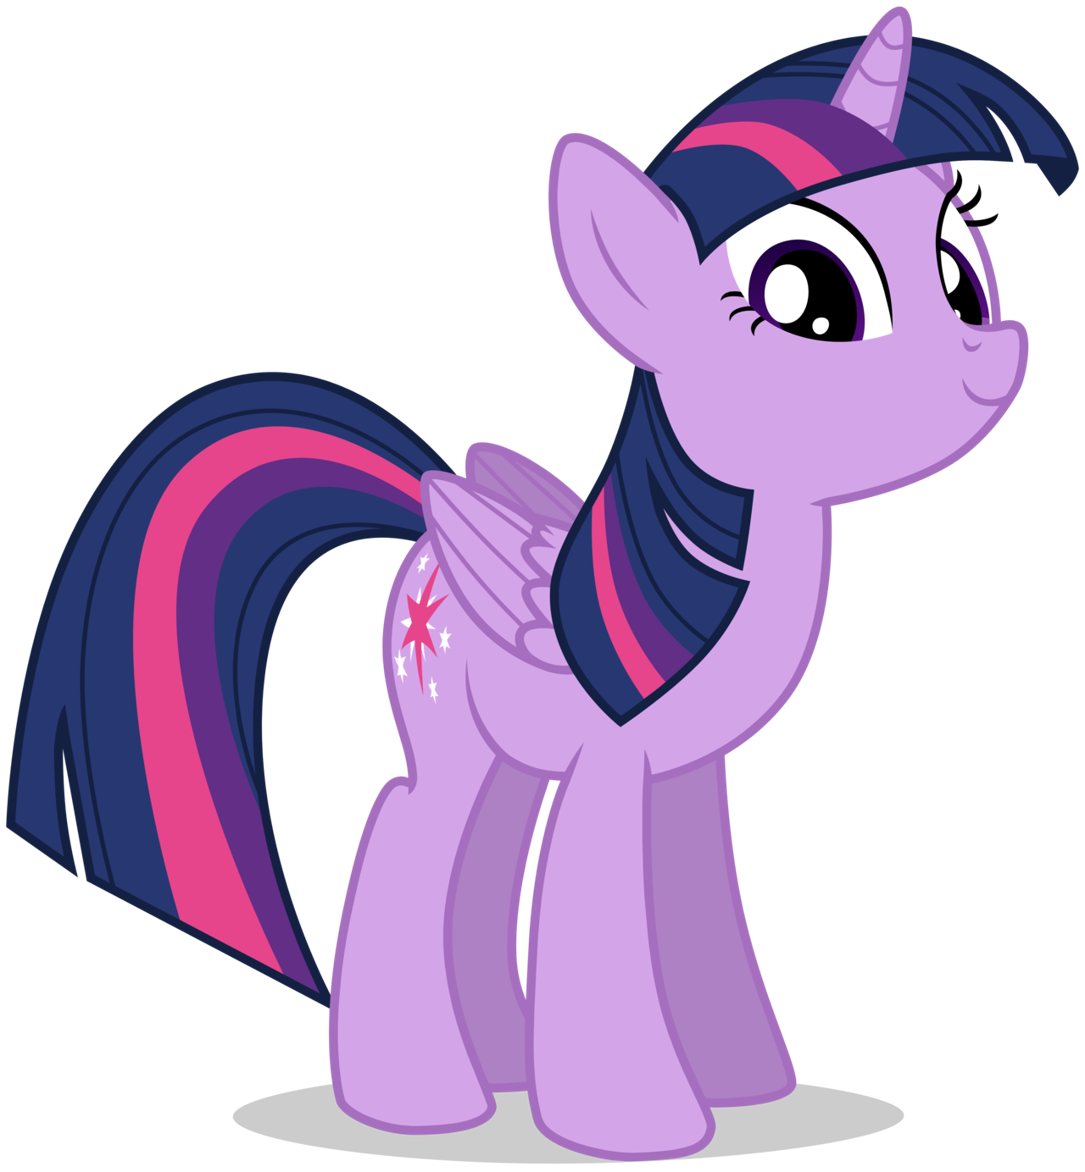 Twilight Sparkle | My little pony in Madagascar Wiki | Fandom